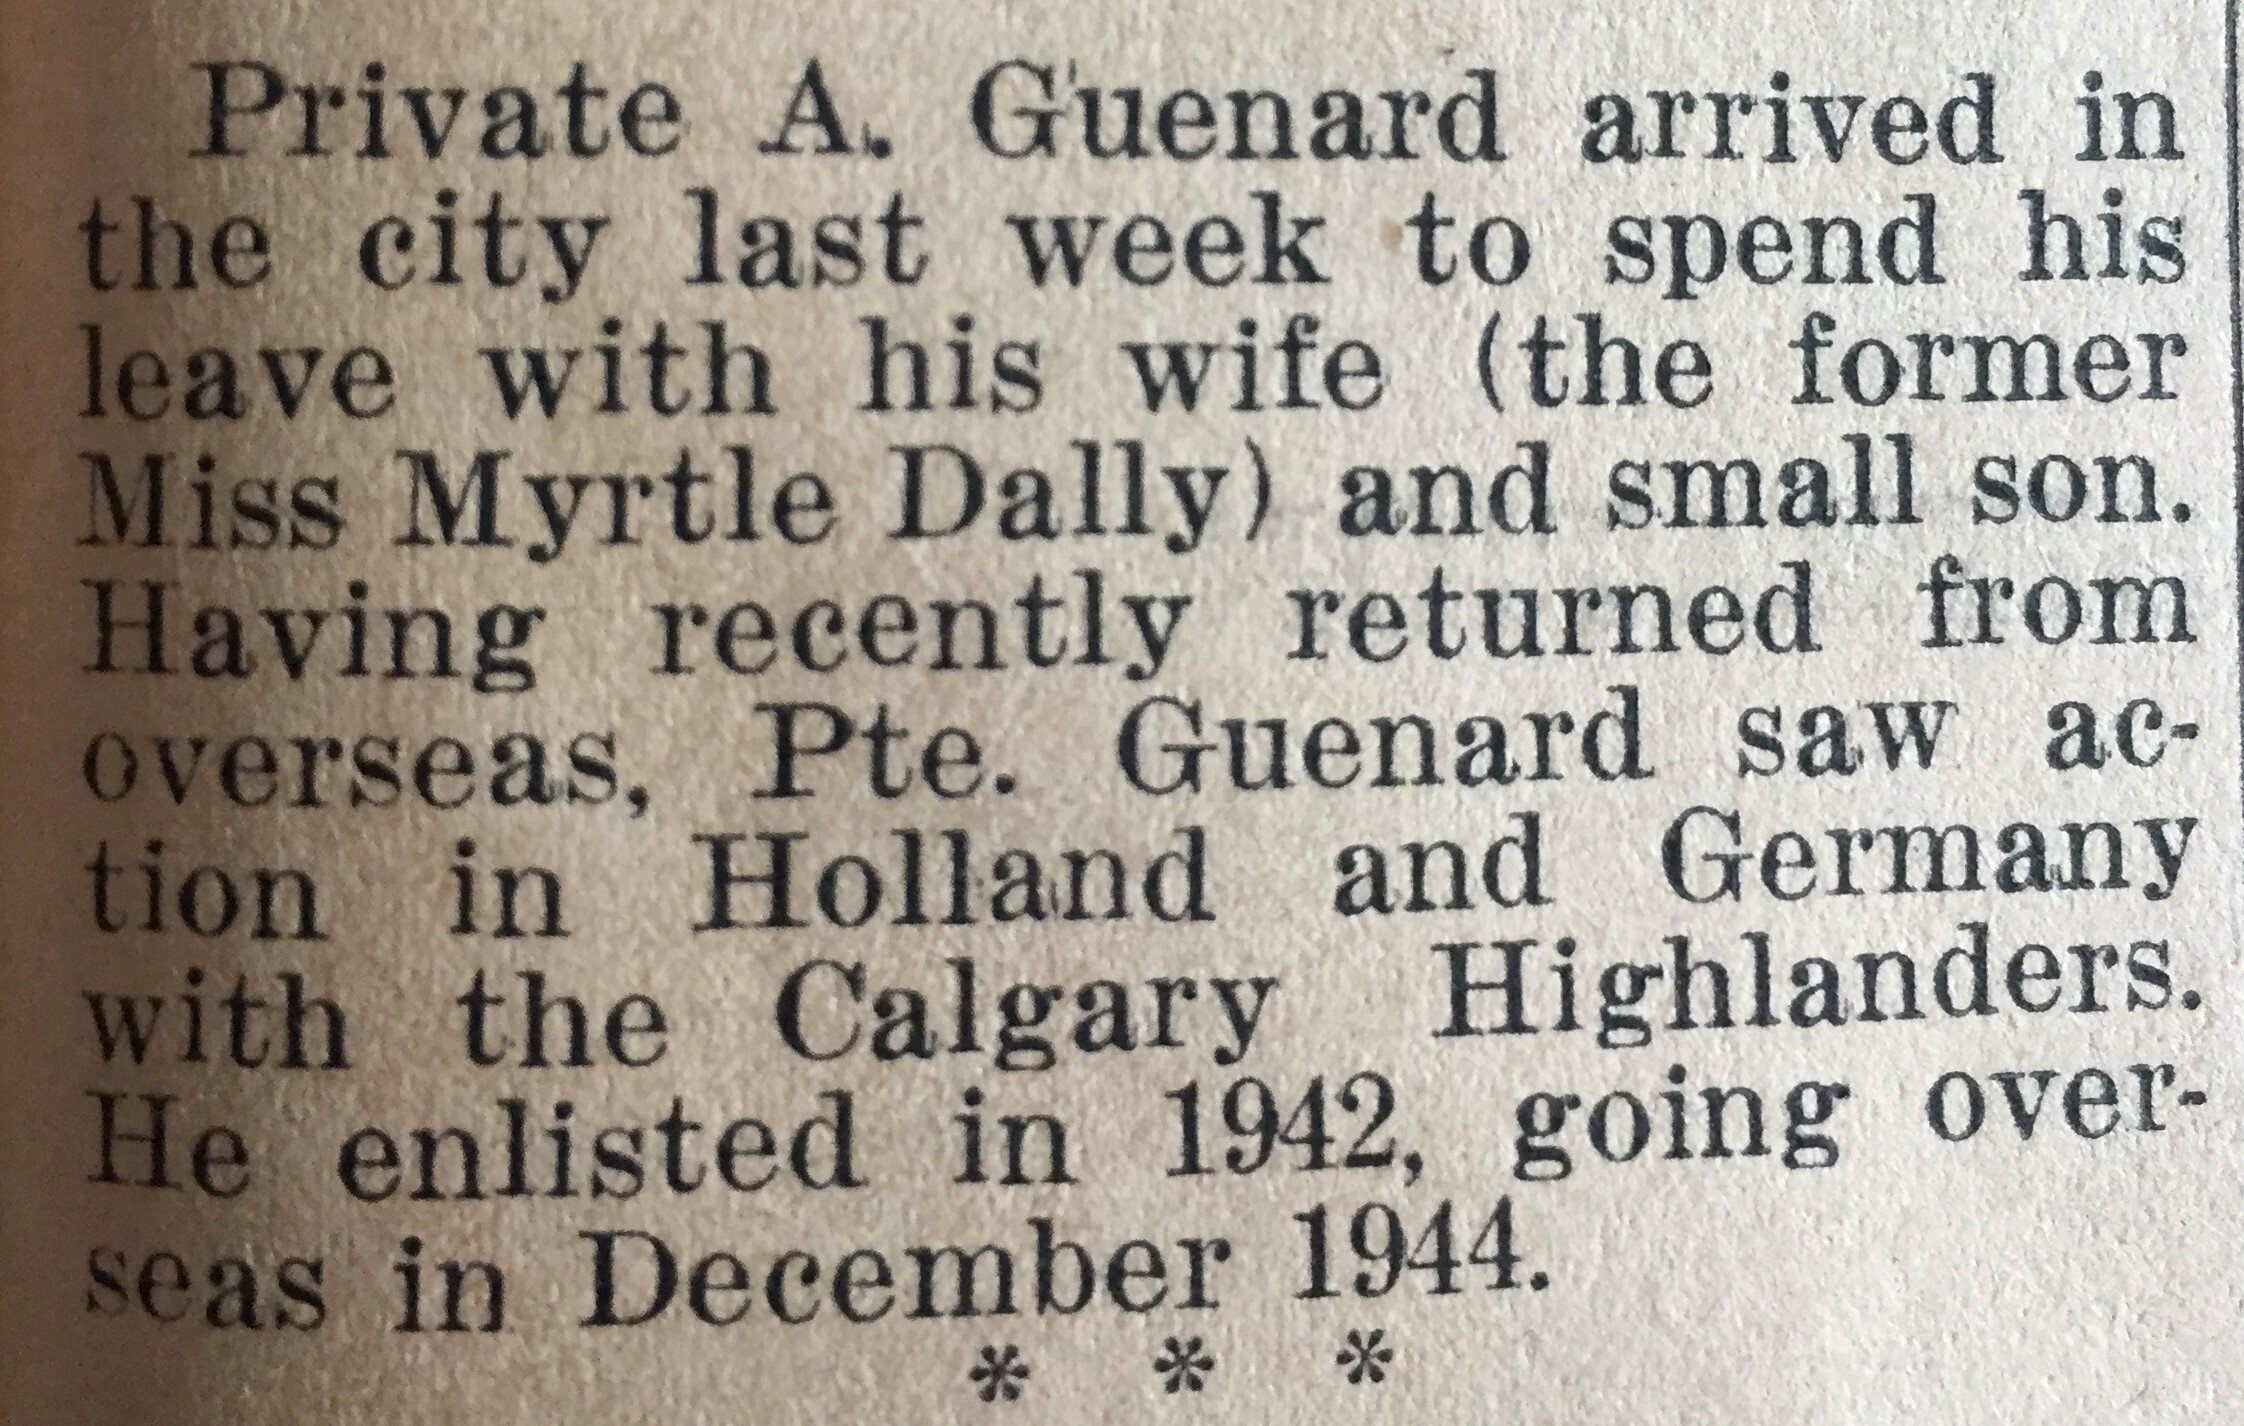 Guenard - Rossland Miner Dec 6, 1945 pg 1.JPG